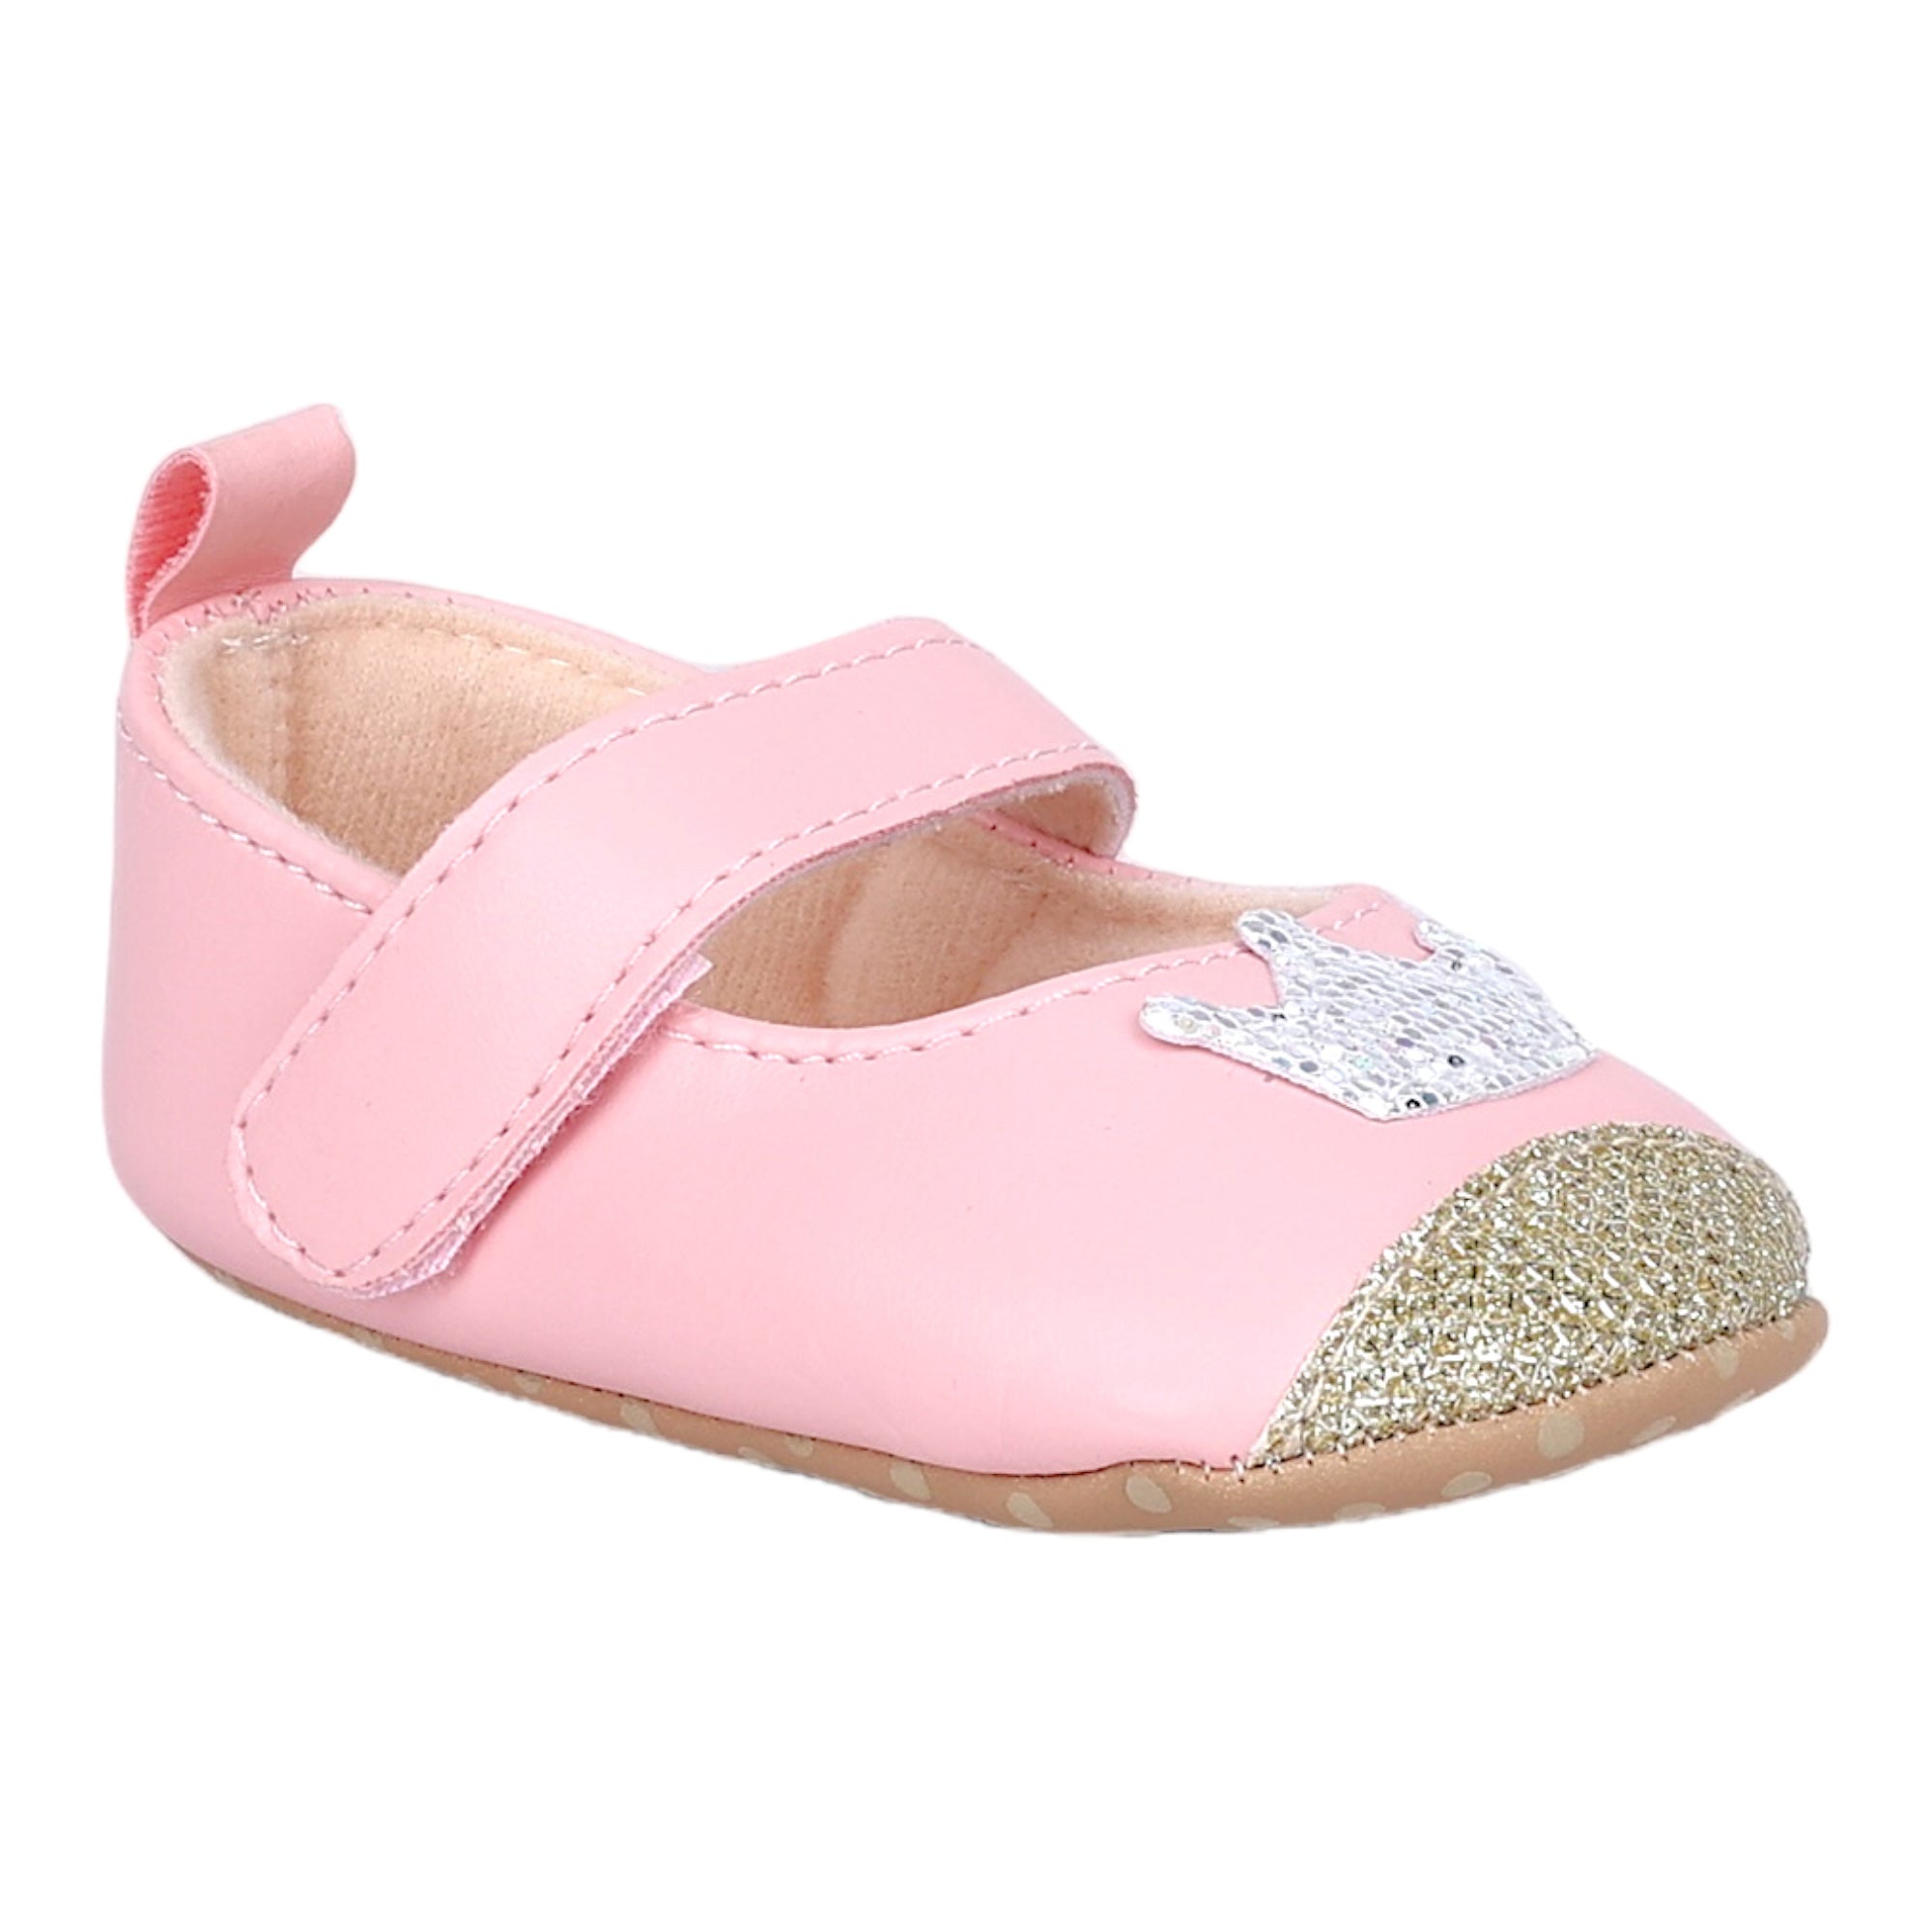 Baby Moo Crown Sequin Partywear Anti-Skid Ballerina Booties - Pink